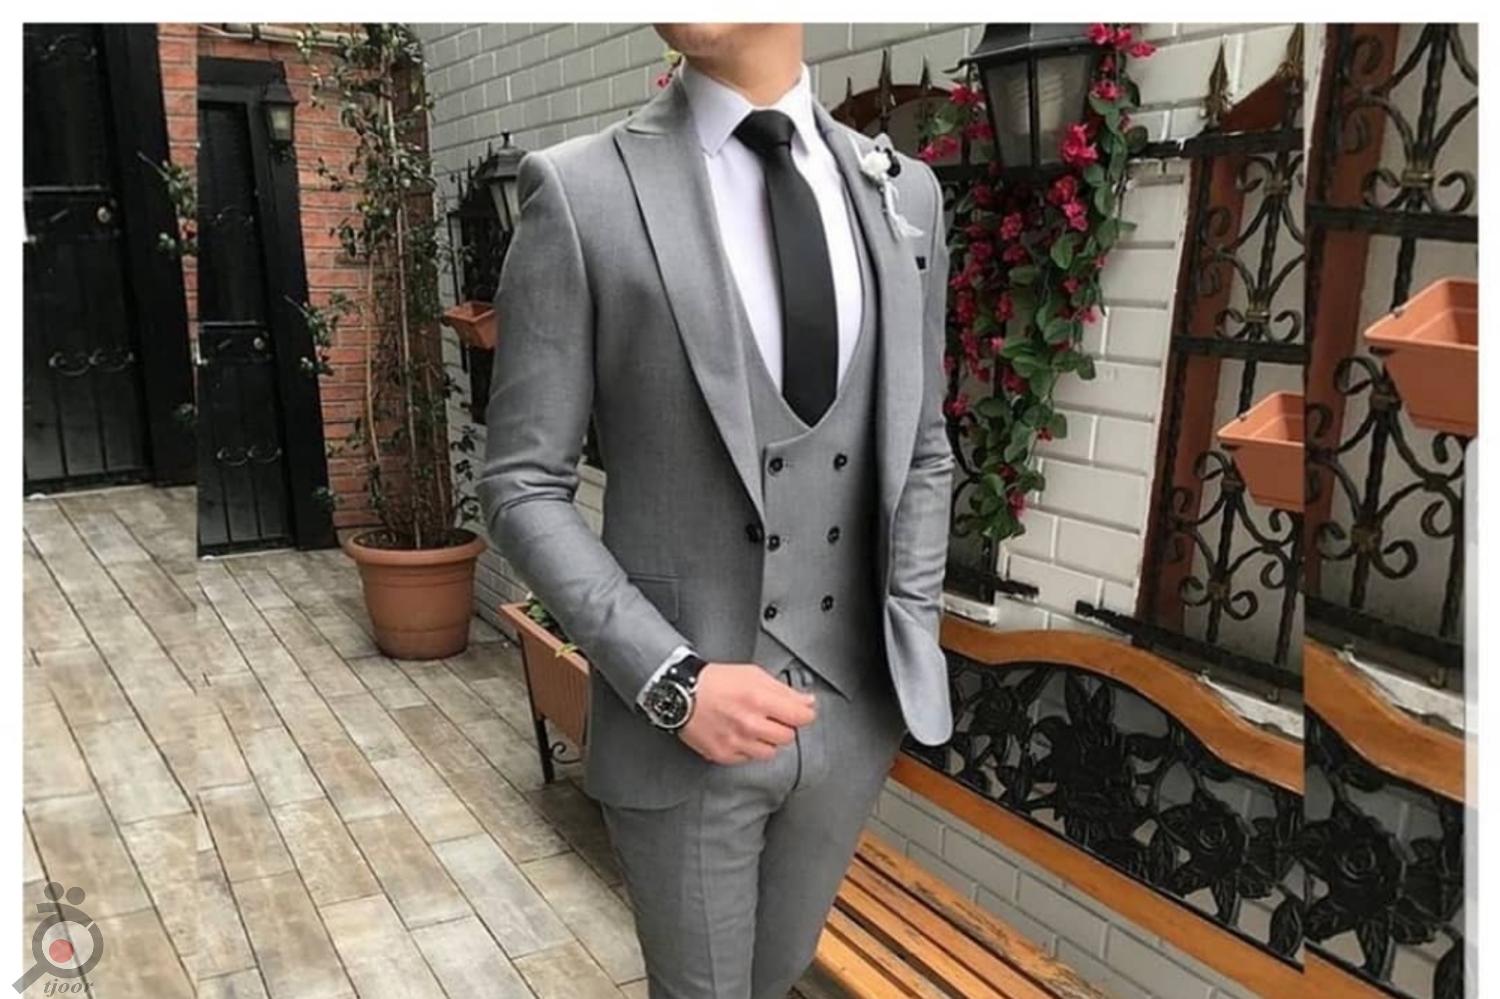 تخفیف پوشاک رسمی مردانه